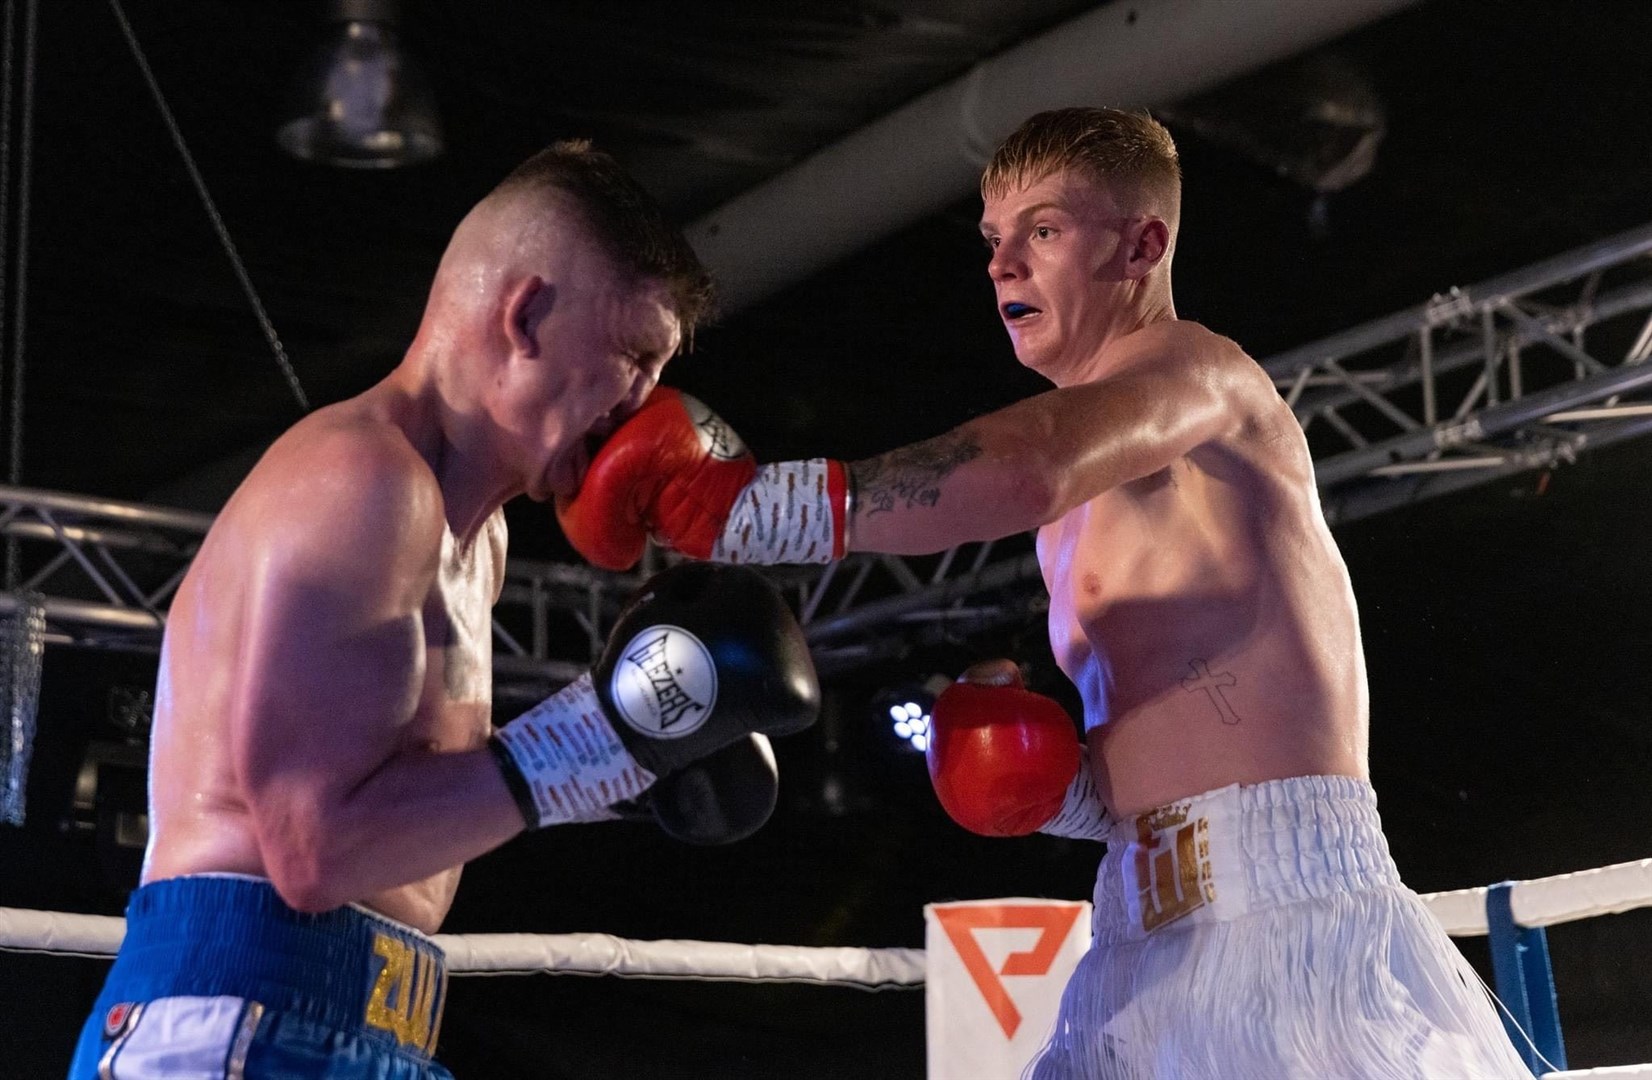 Fraser Wilkinson lands a punch on Kristaps Zulgis. Picture: David Rothnie